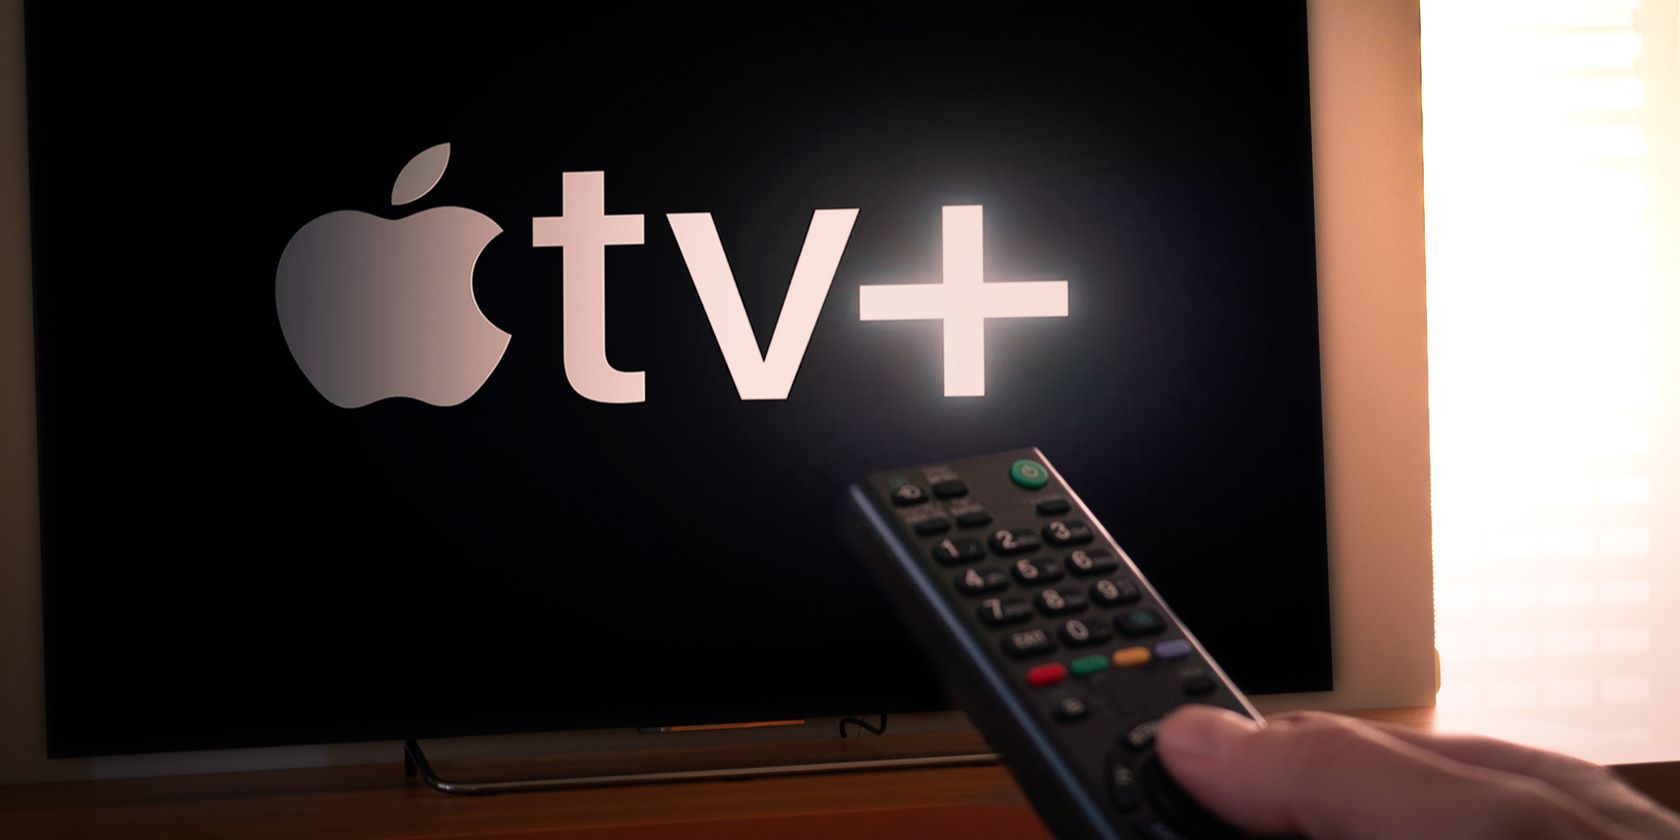 apple-tv-logo-on-screen.jpg